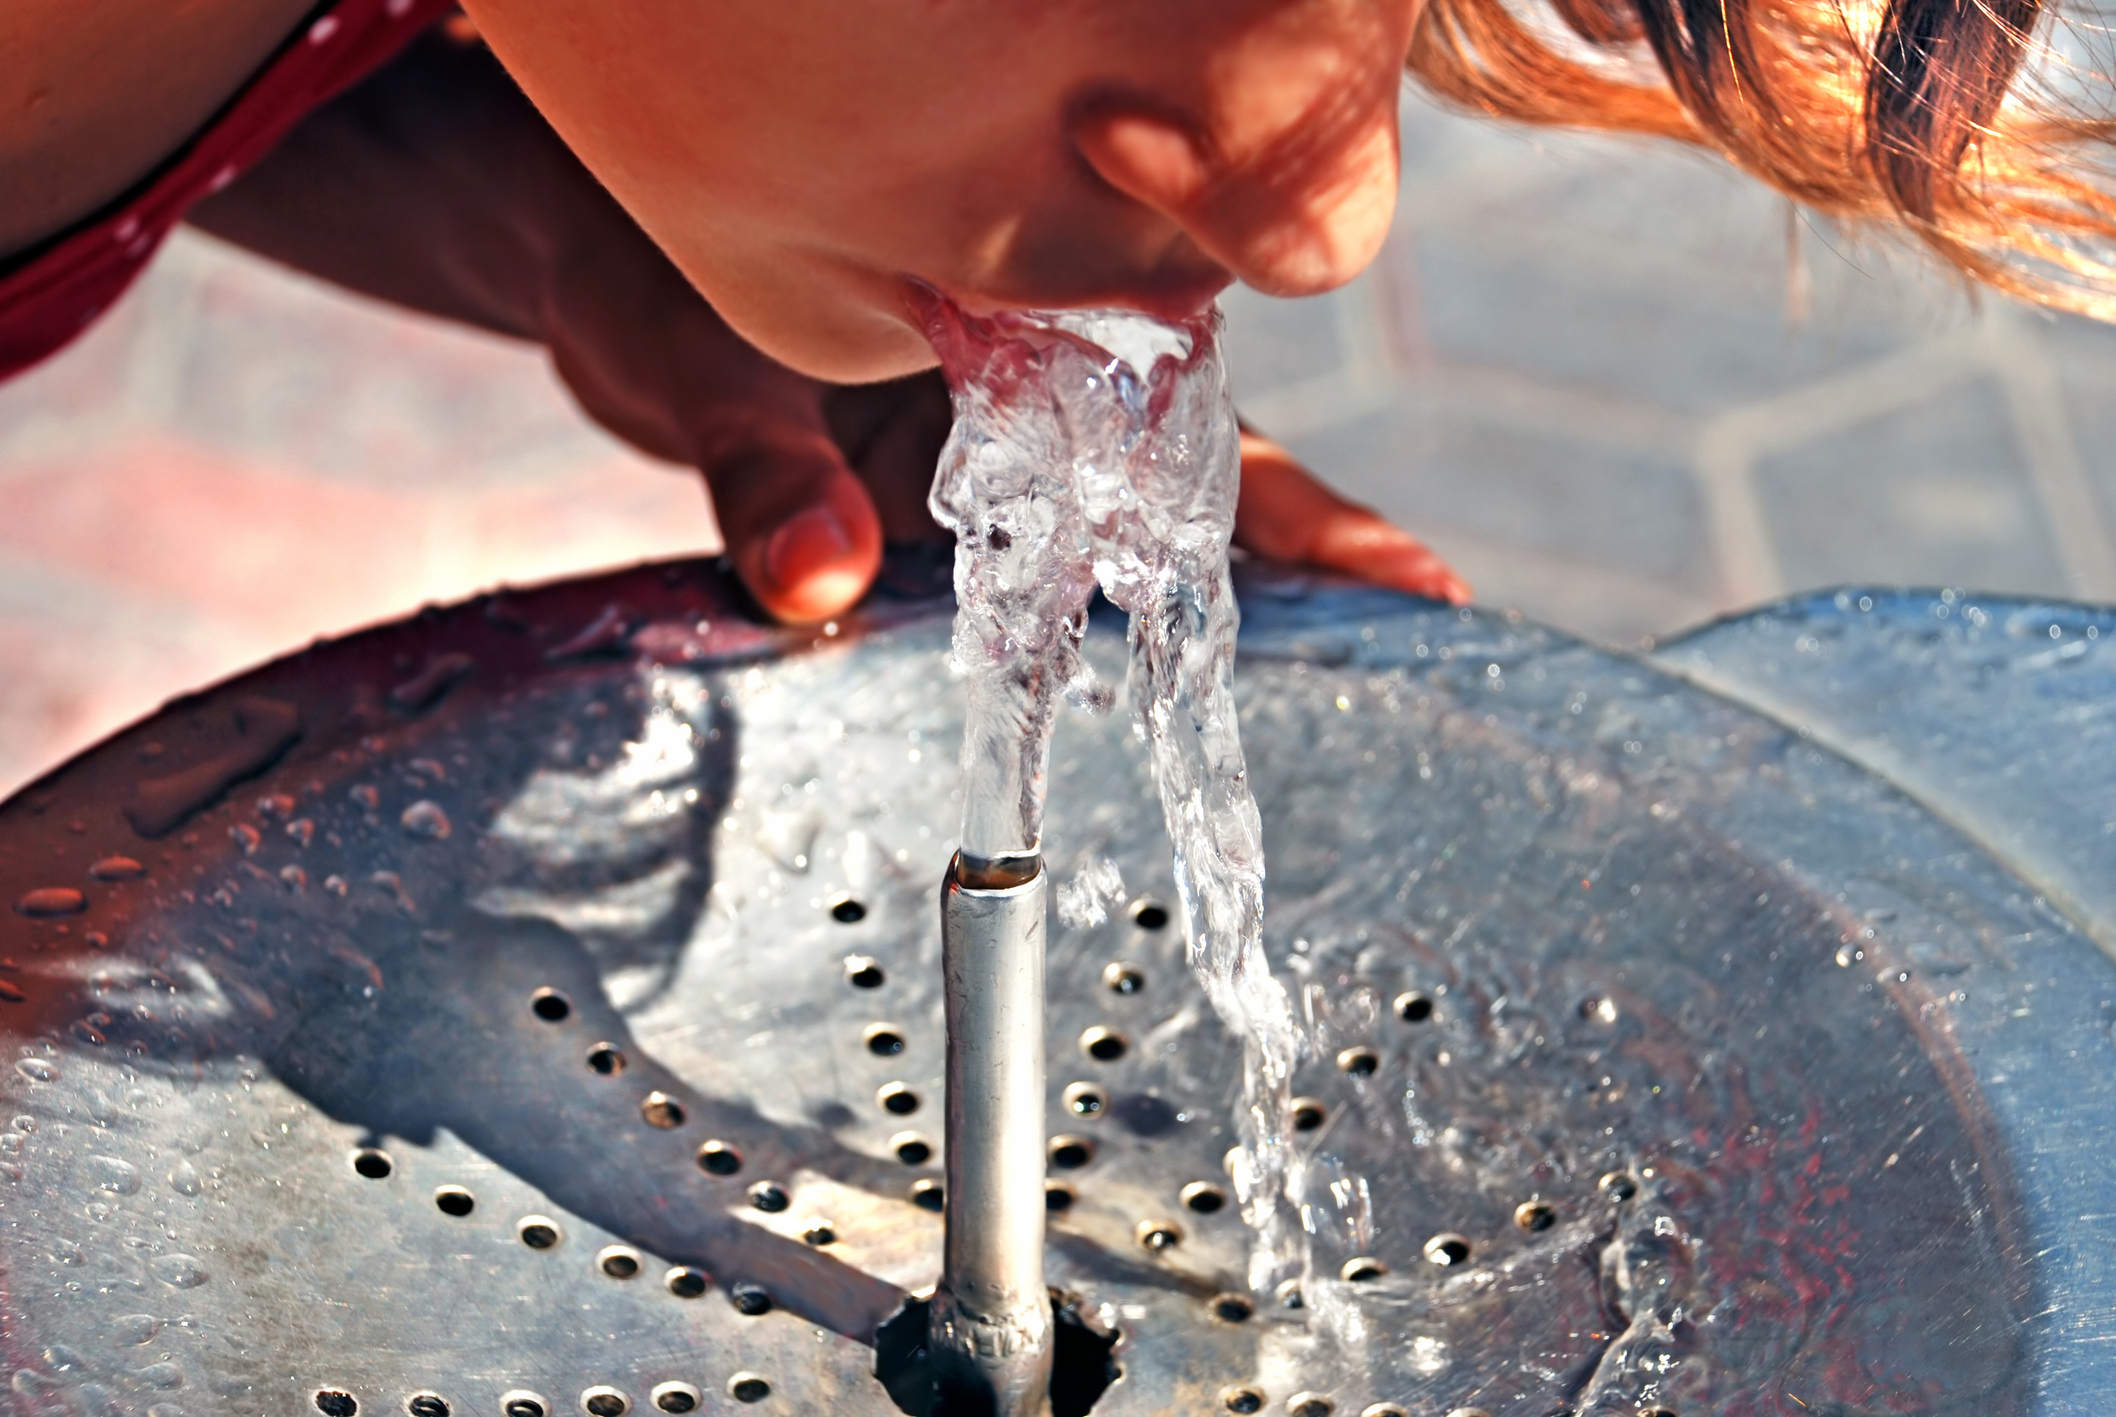 Чтоб стекала вода. Пить воду из фонтана. Питьевой фонтанчик. Питьть воду из фонтанчика. Пьет из фонтана.